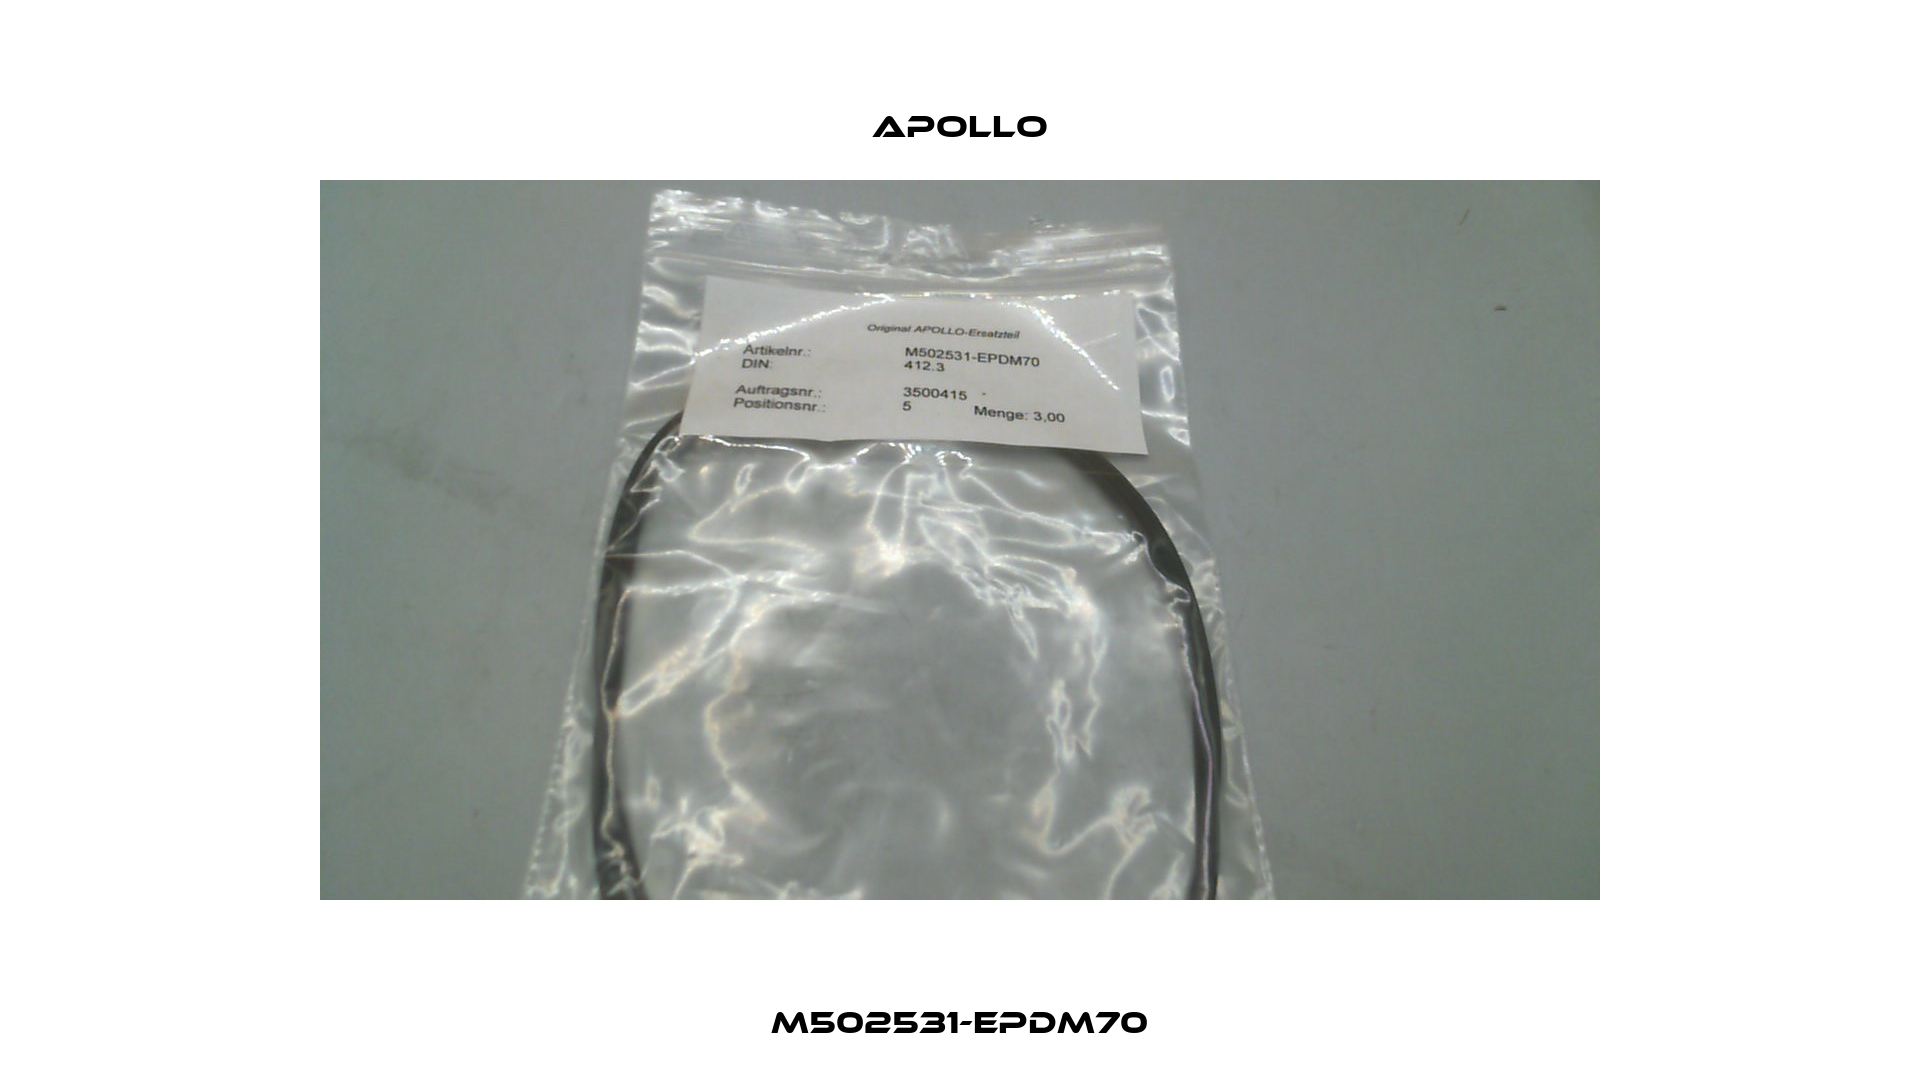 M502531-EPDM70 Apollo